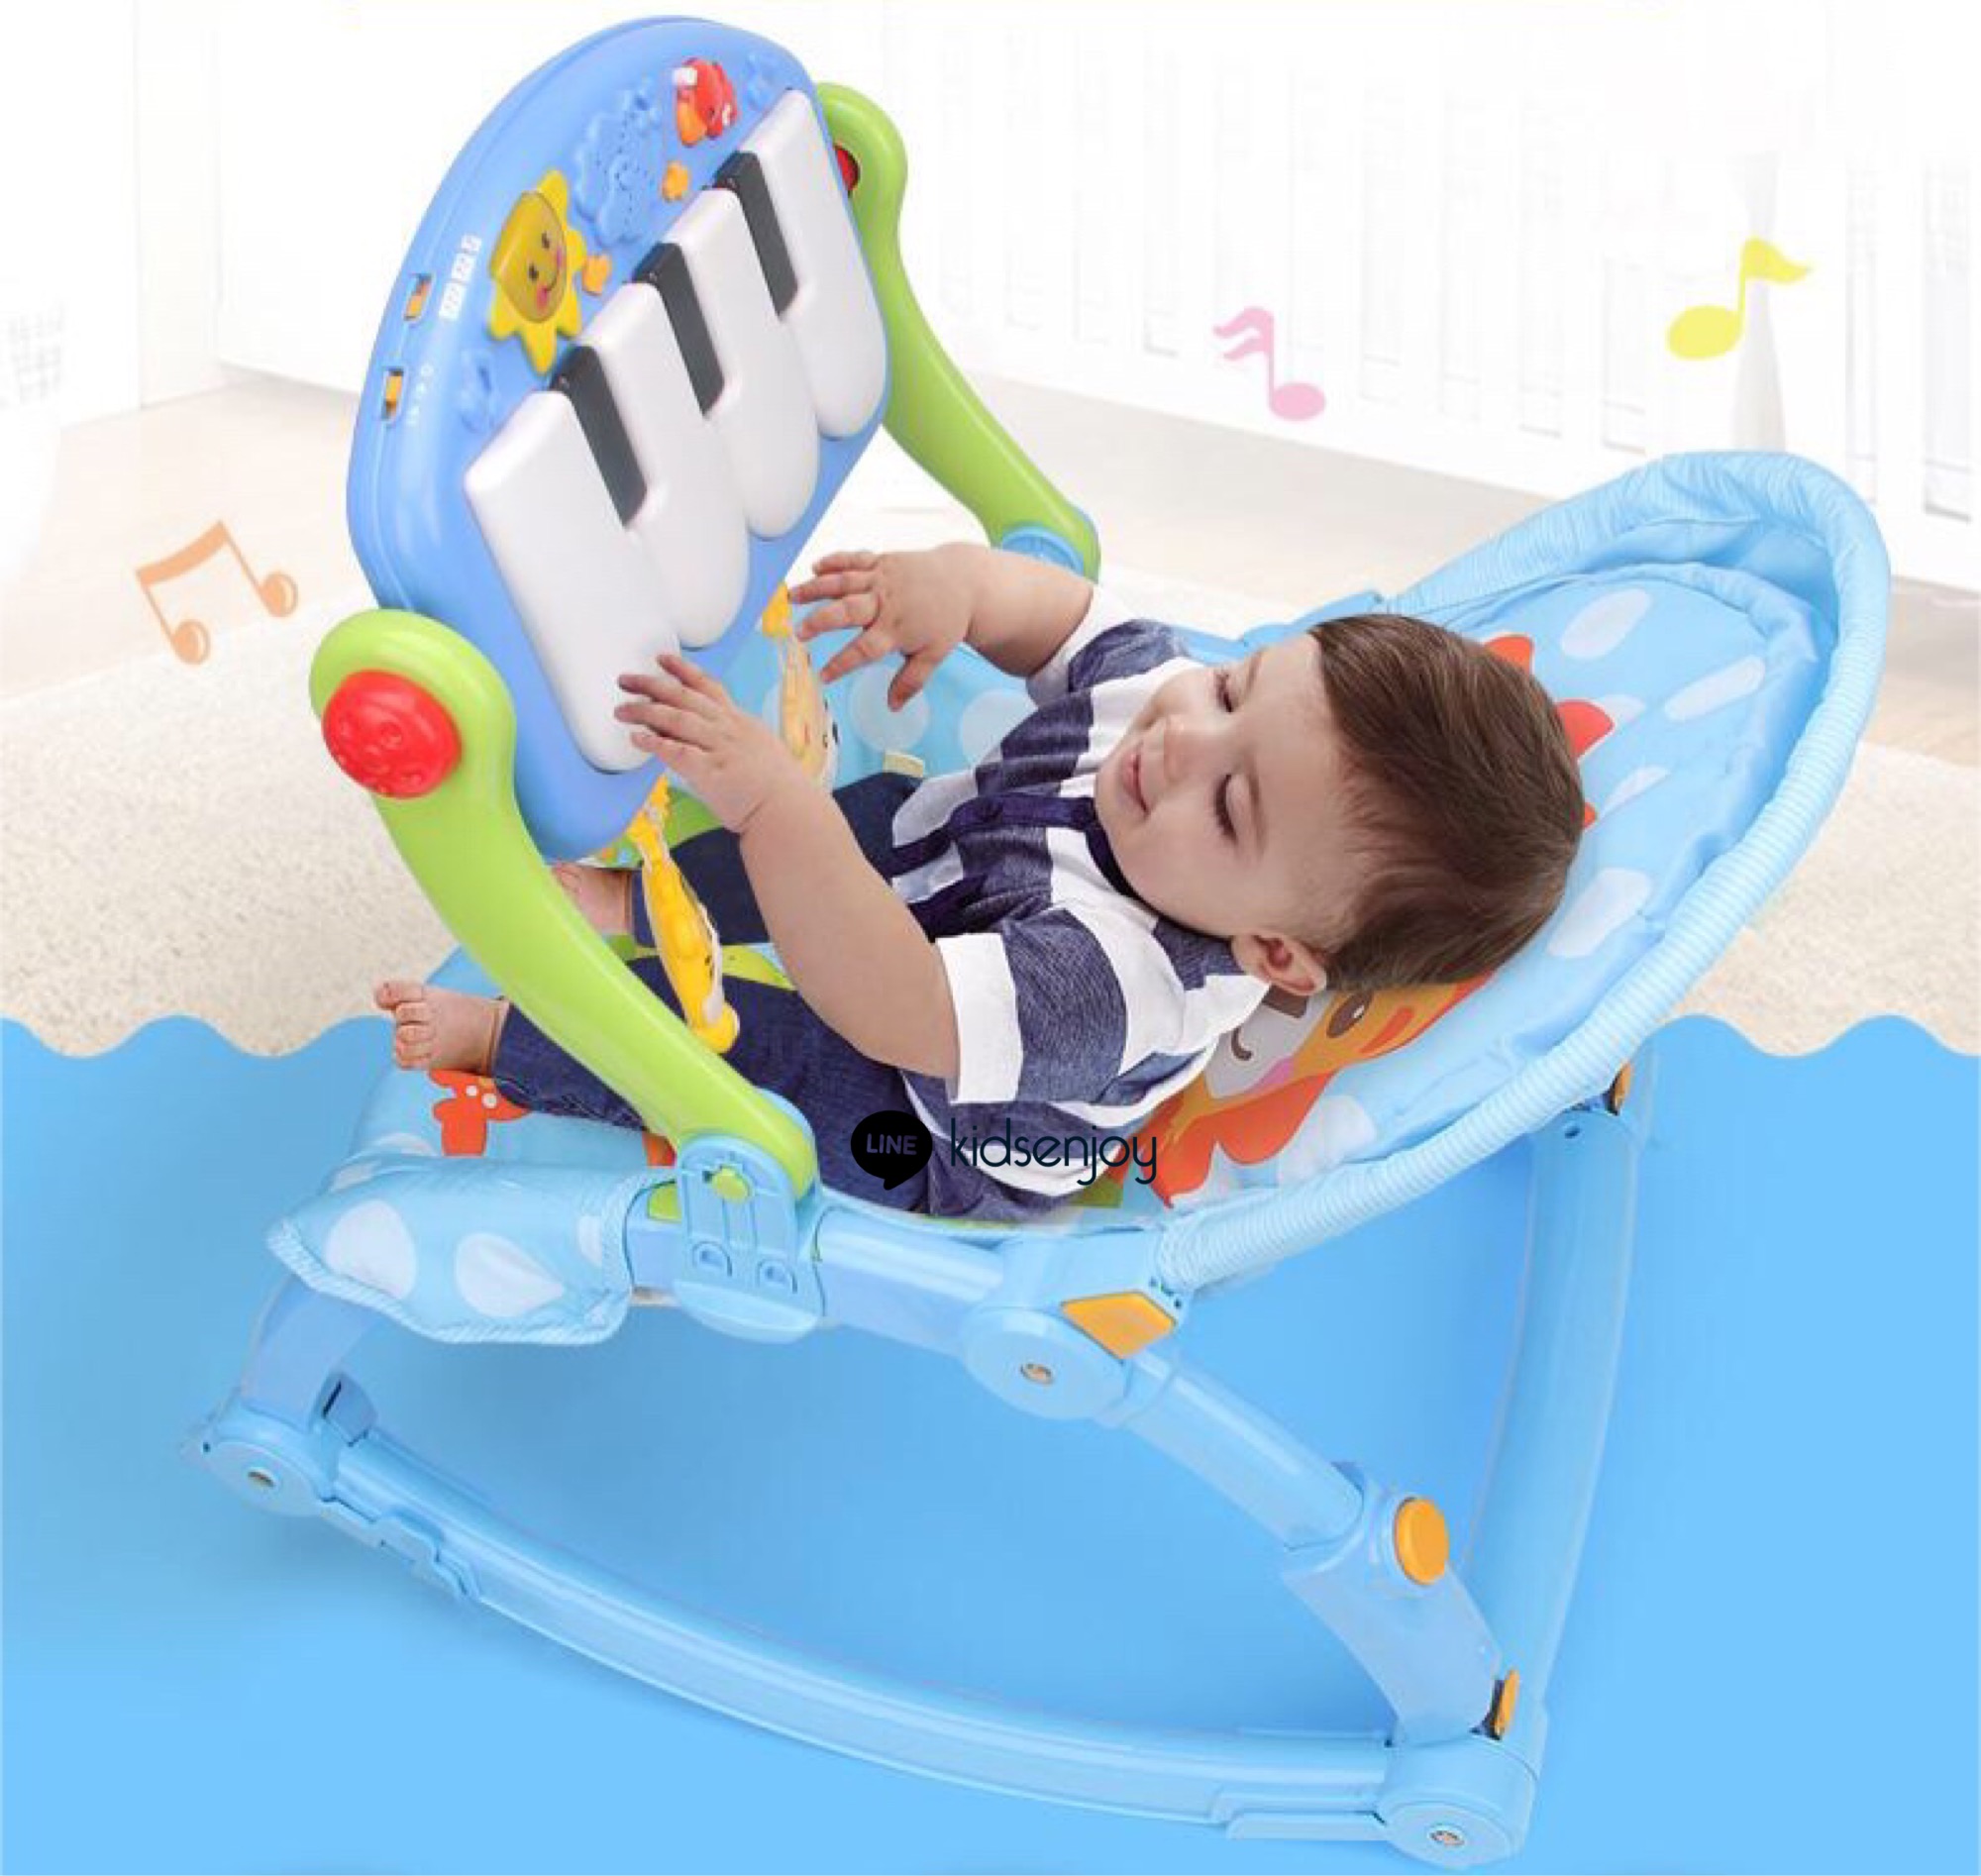 เปลโยกสิงโต พร้อมเปียโนเสริมพัฒนาการ Baby pedal gym chair รูปที่ 1